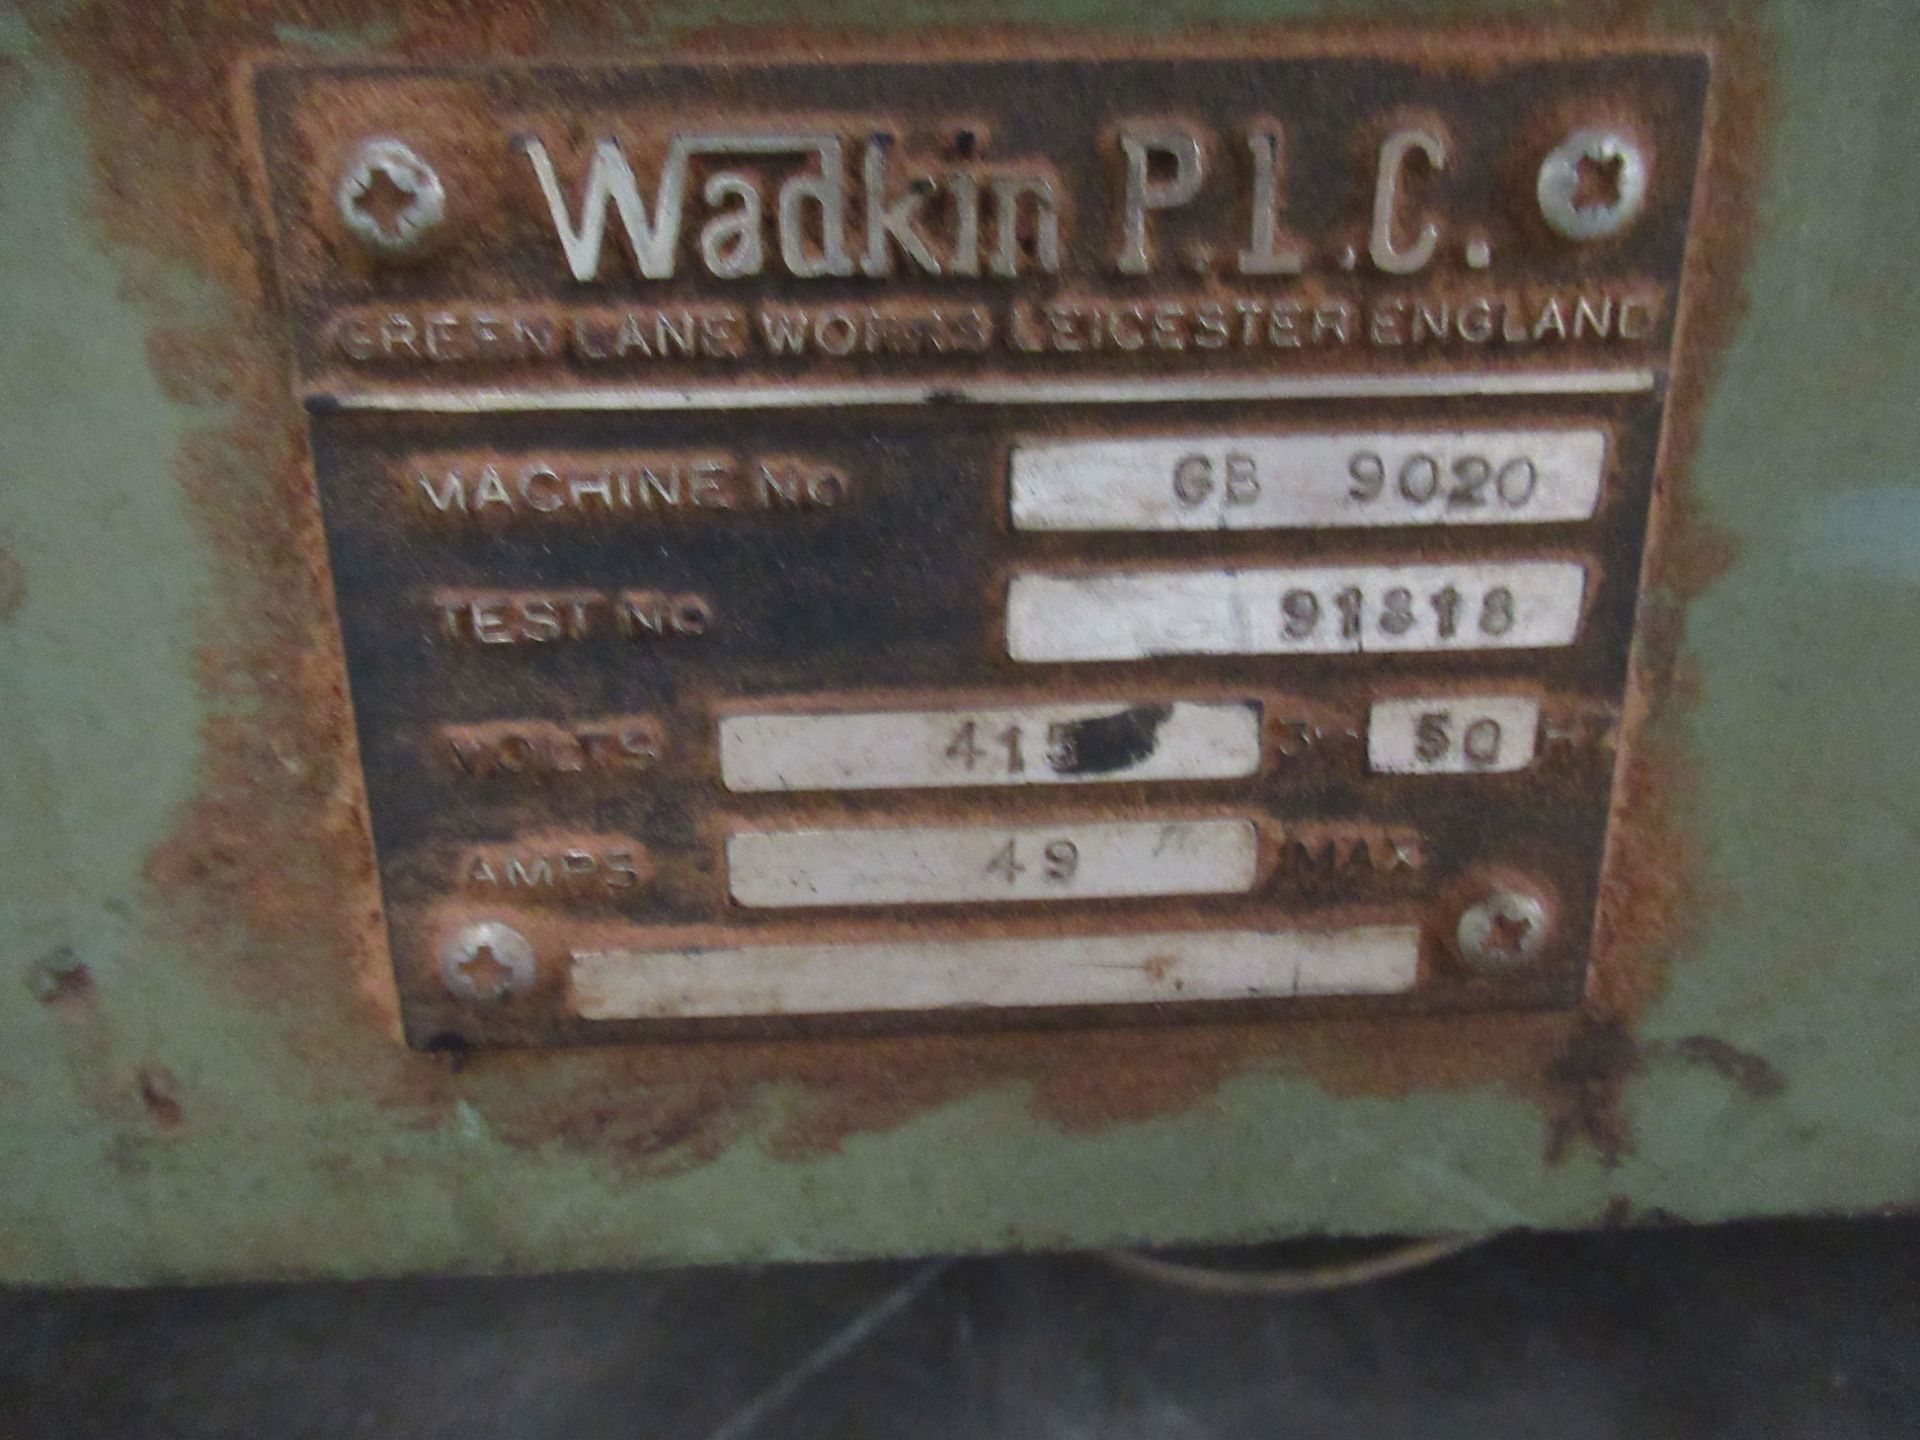 Wadkin GB9020 Moulder Planer - 3ph - Image 3 of 8